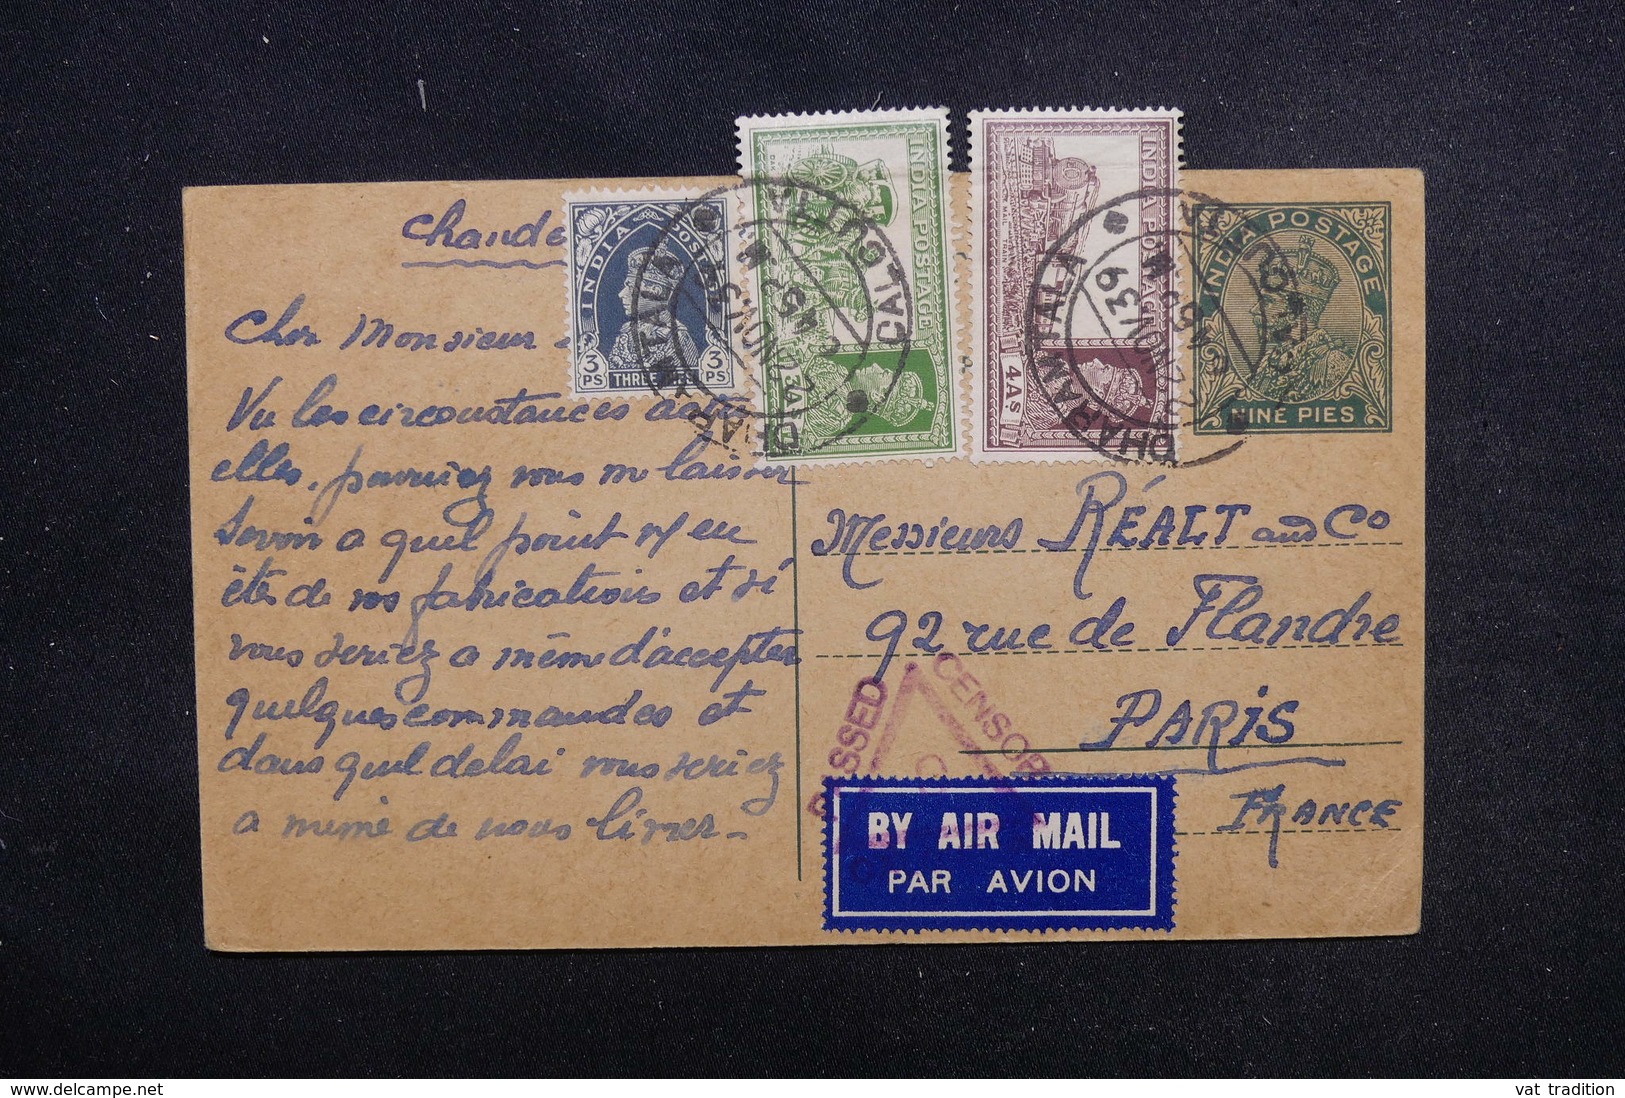 INDE - Entier Postal + Compléments De Calcutta Pour Paris En 1945 Avec Contrôle Postal - L 51790 - 1936-47 Koning George VI